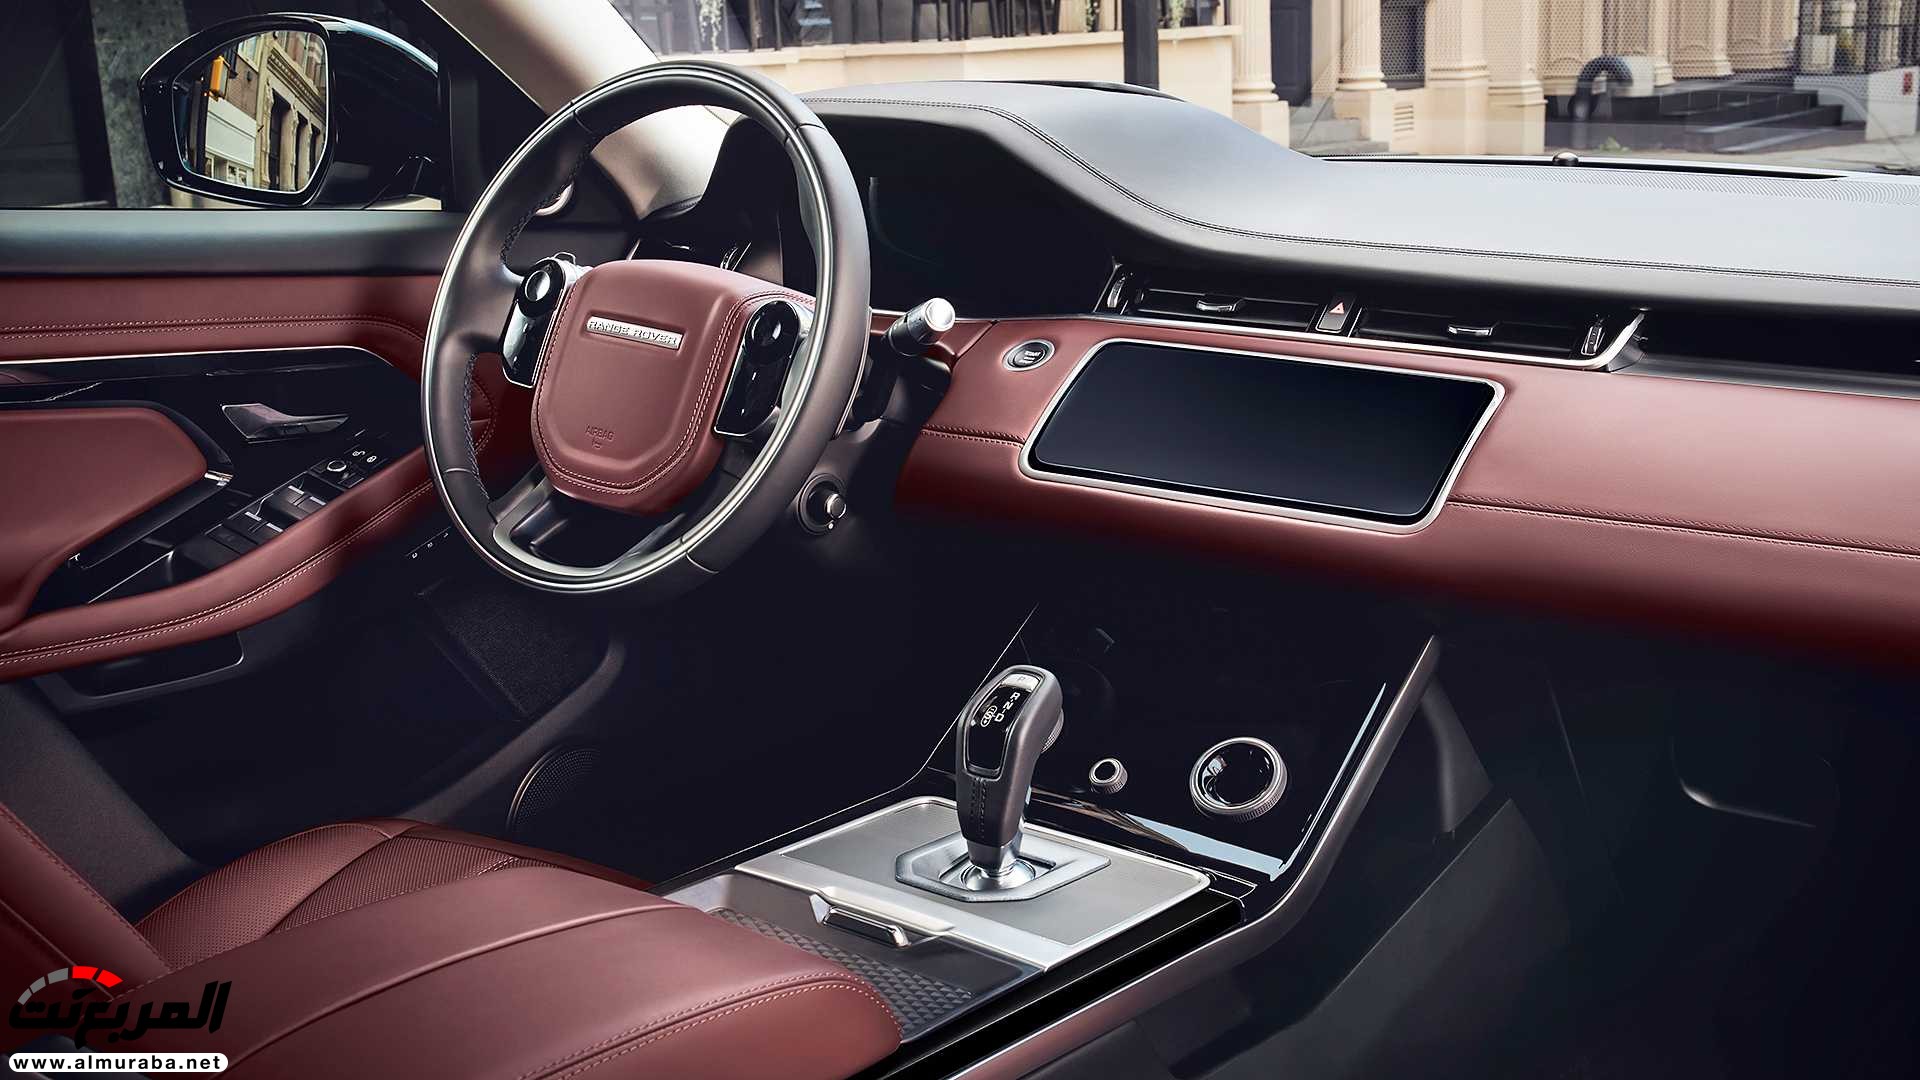 اهم 7 معلومات عن رنج روفر ايفوك 2020 الجديدة كلياً Range Rover Evoque 54